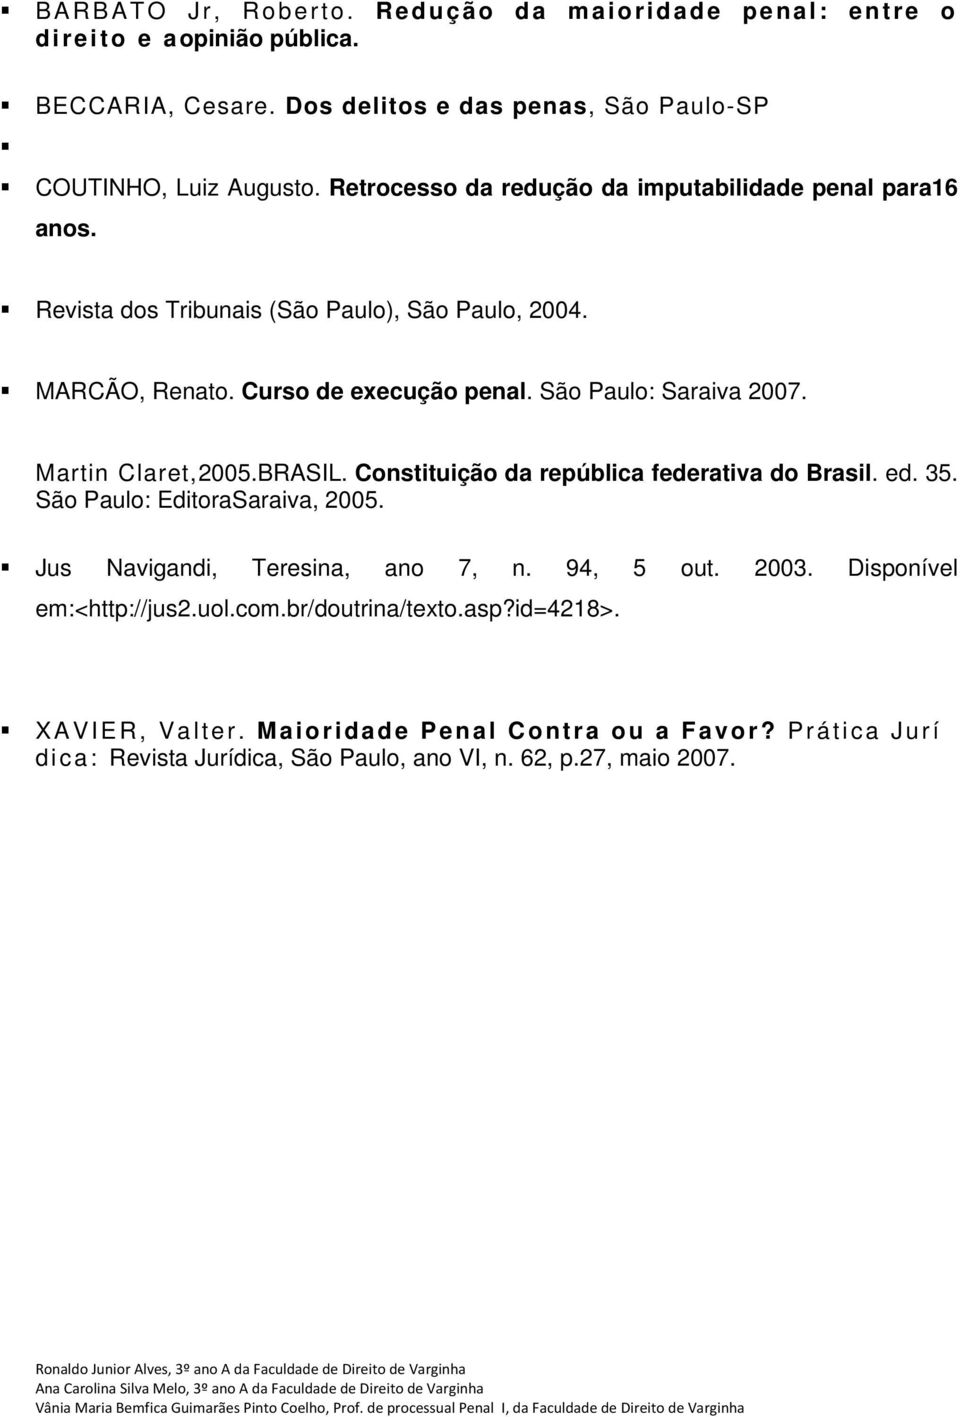 Martin Claret,2005.BRASIL. Constituição da república federativa do Brasil. ed. 35. São Paulo: EditoraSaraiva, 2005. Jus Navigandi, Teresina, ano 7, n. 94, 5 out. 2003.